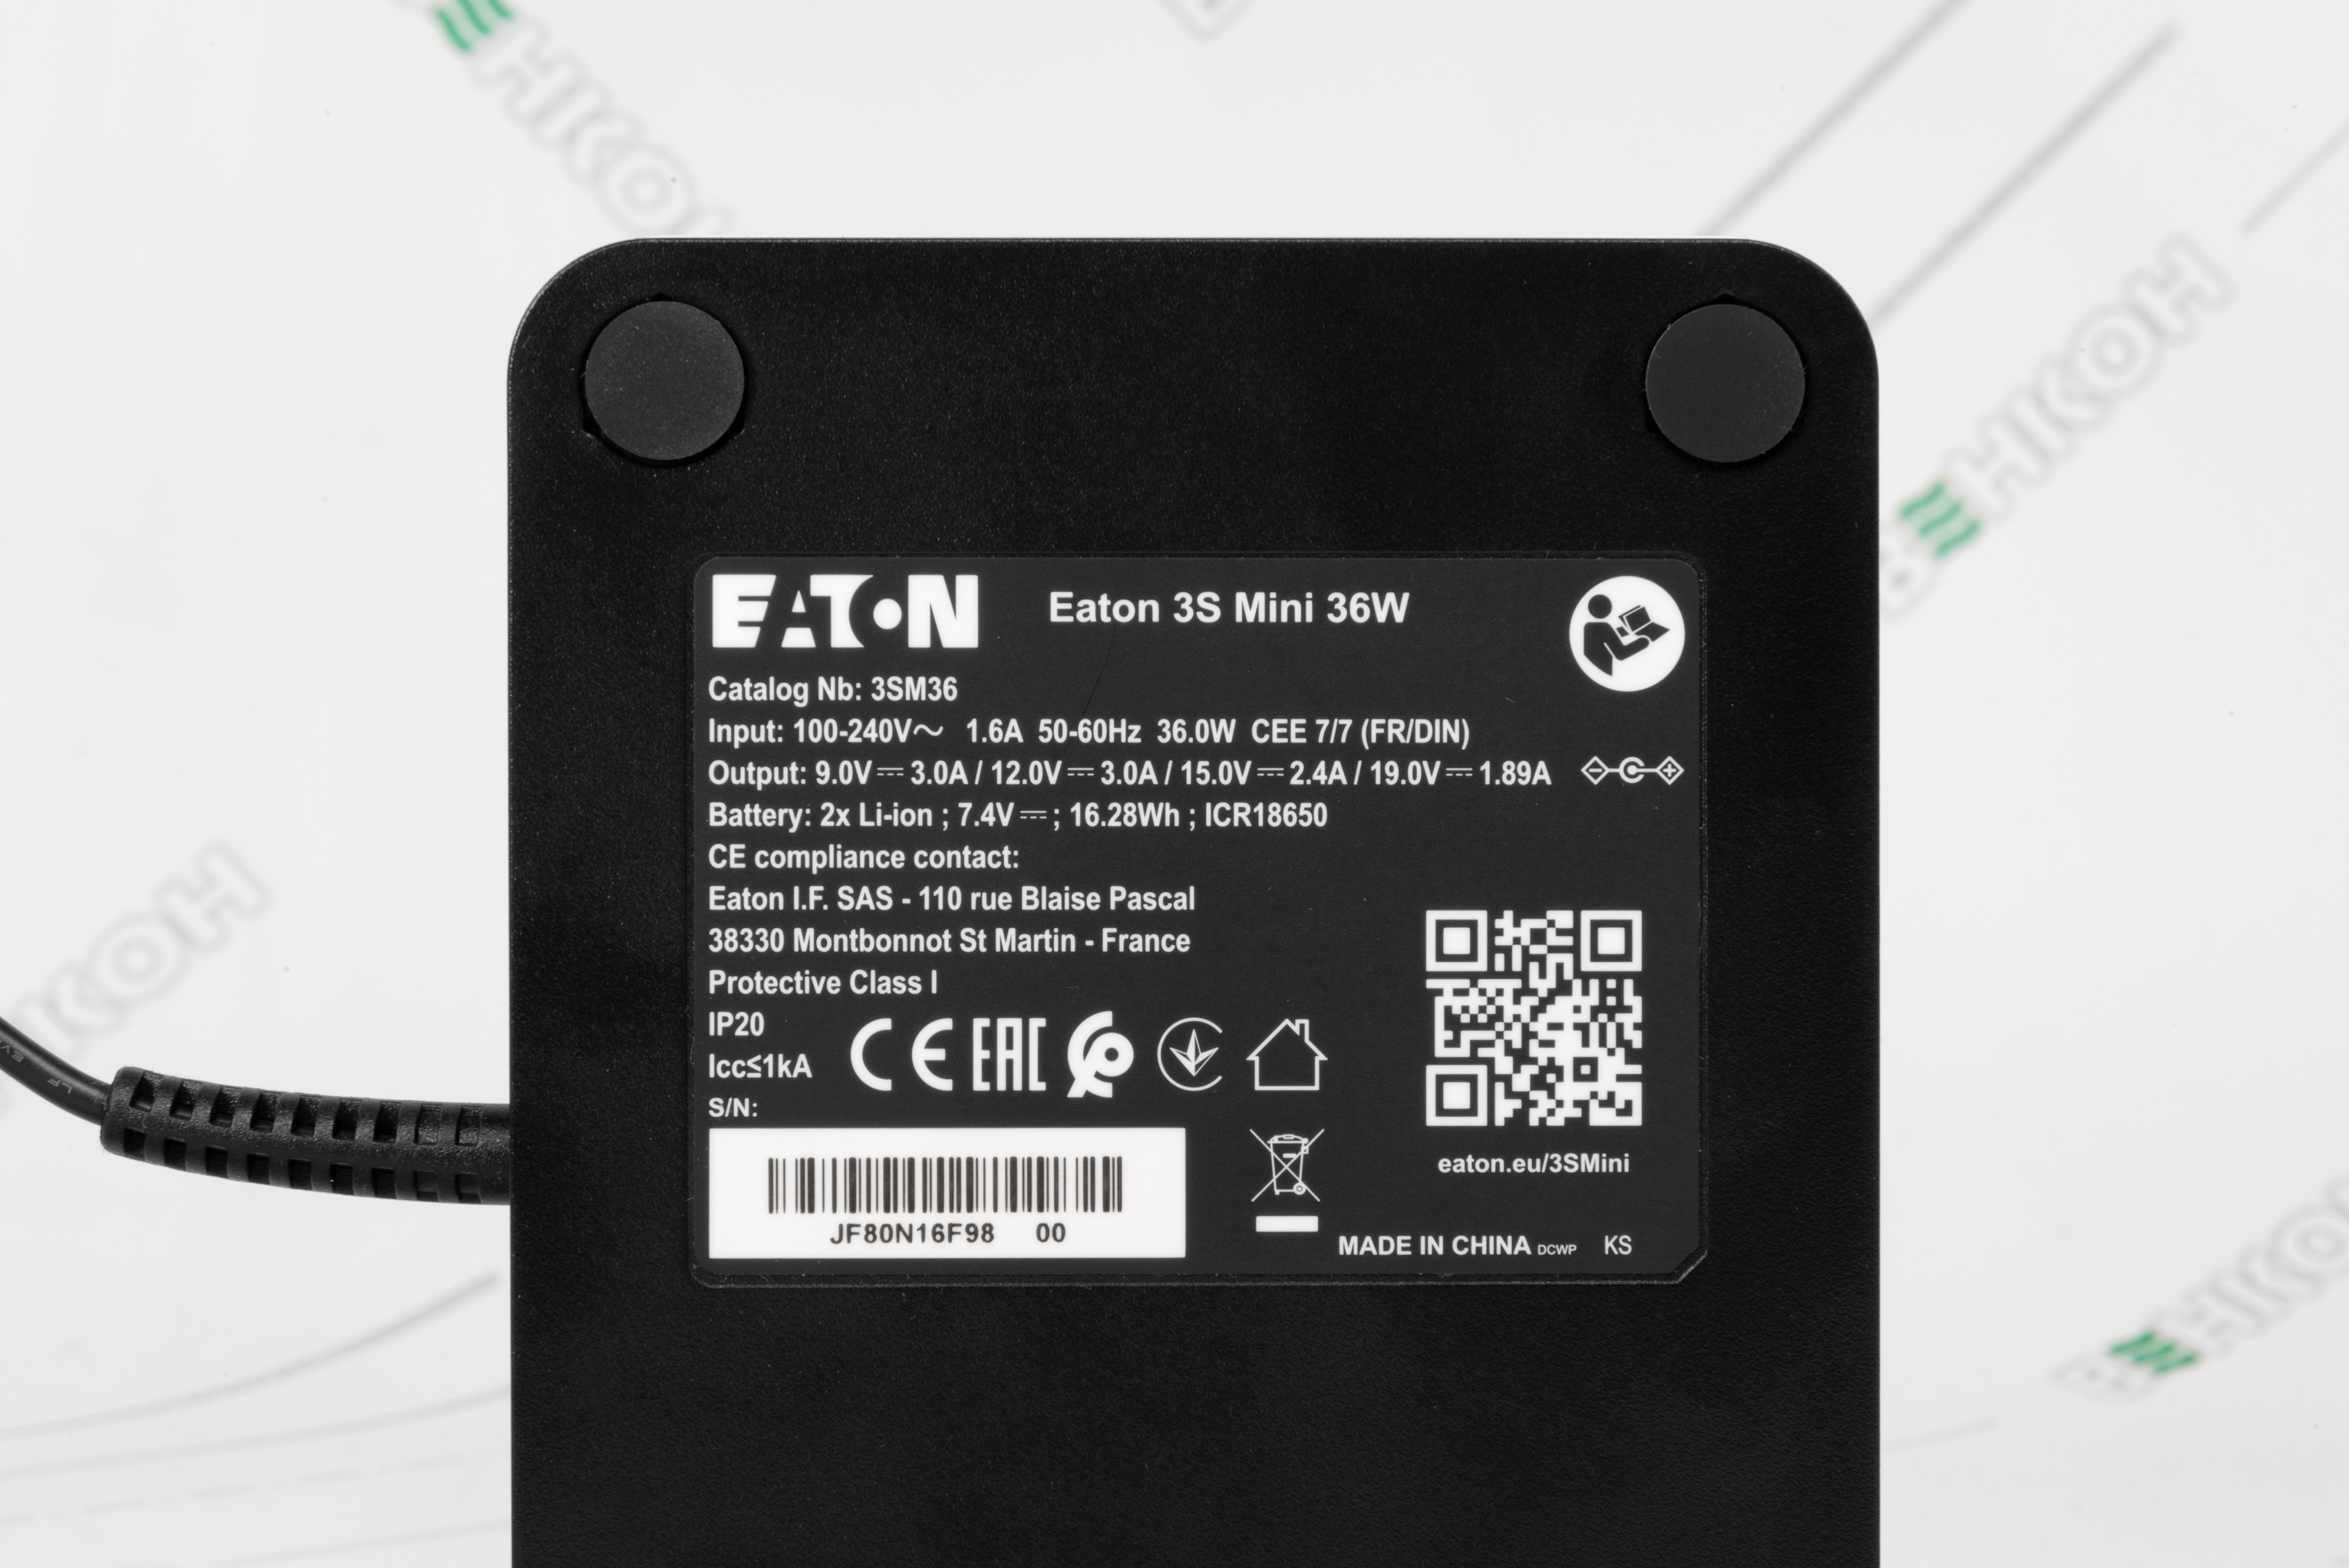 Источник бесперебойного питания Eaton 3S Mini 36W (3SM36) обзор - фото 8